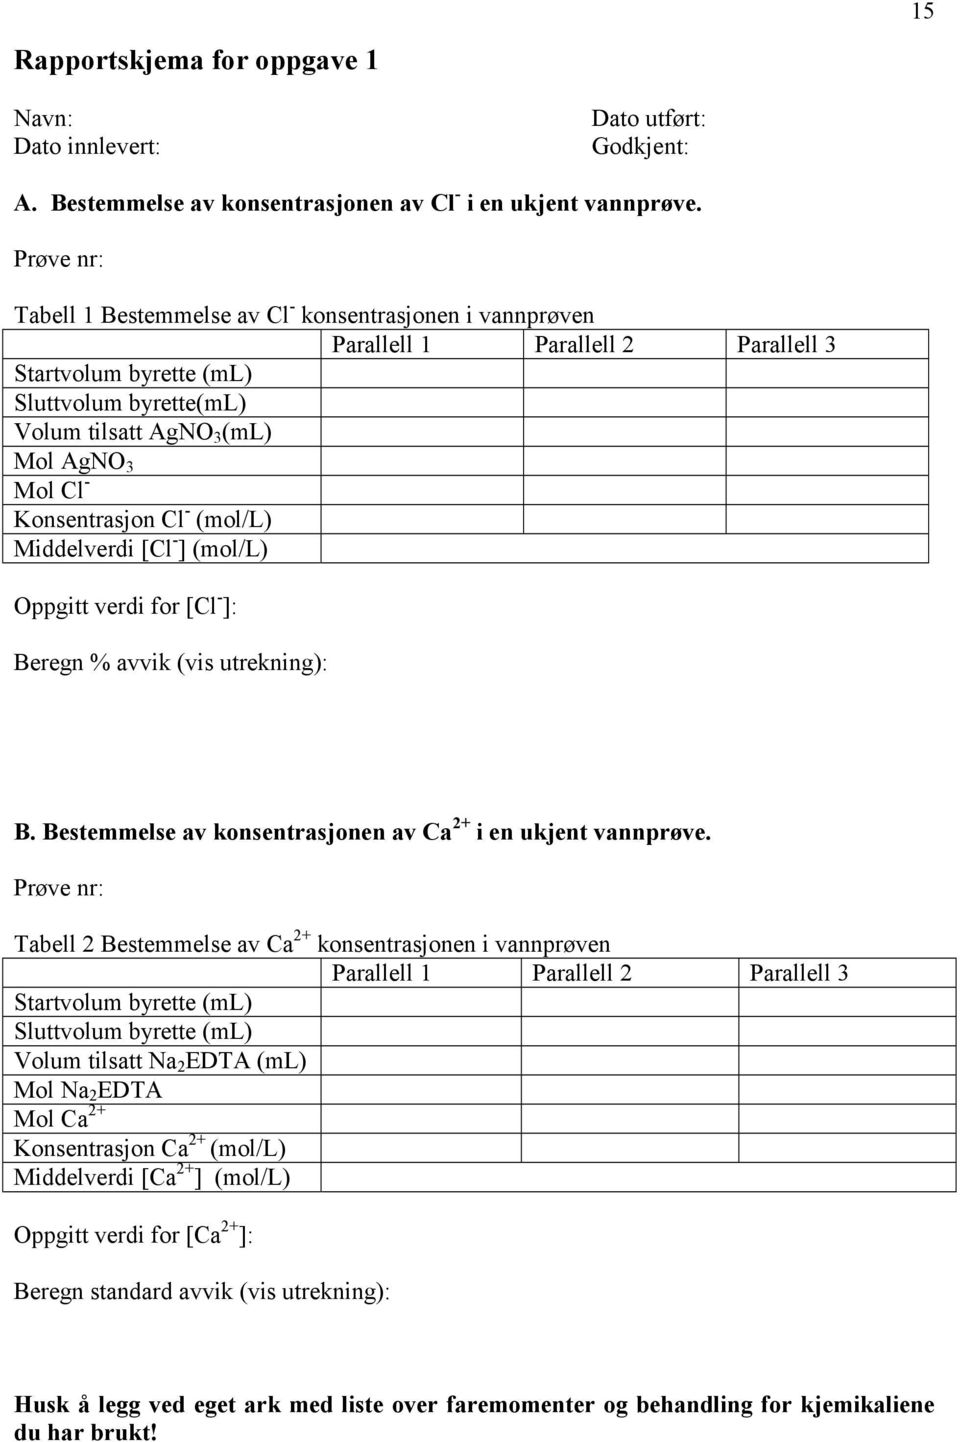 Konsentrasjon Cl - (mol/l) Middelverdi [Cl - ] (mol/l) Oppgitt verdi for [Cl - ]: Beregn % avvik (vis utrekning): B. Bestemmelse av konsentrasjonen av Ca 2+ i en ukjent vannprøve.